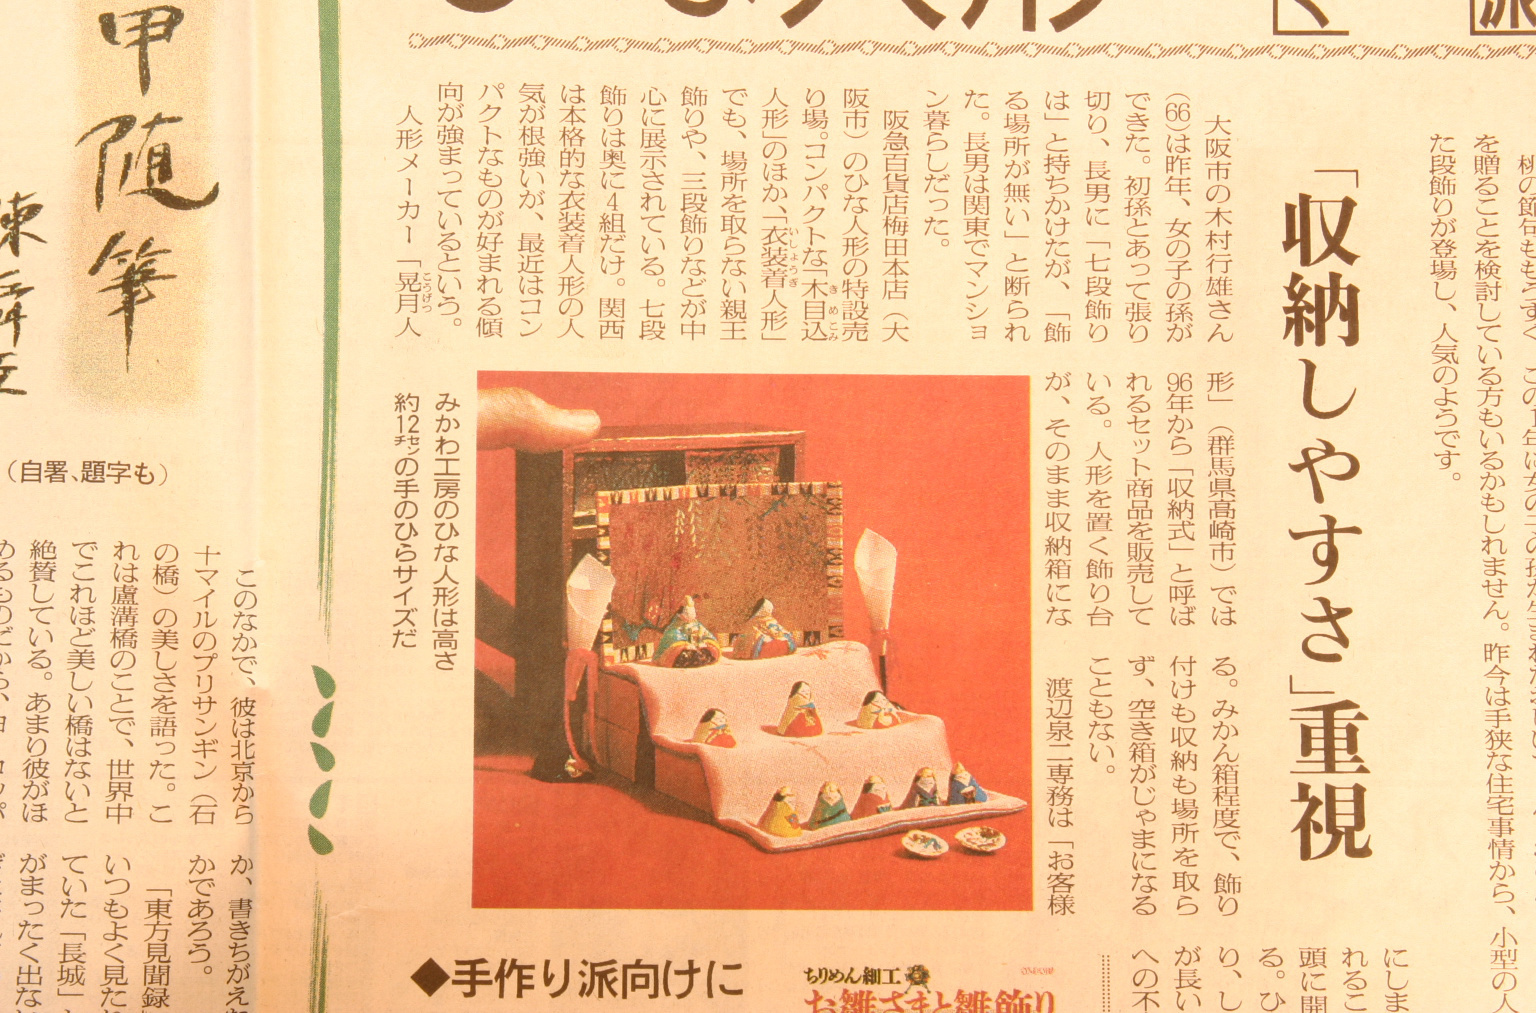 朝日新聞の全国版に以前掲載されたみかわ工房の「小さき物の世界」